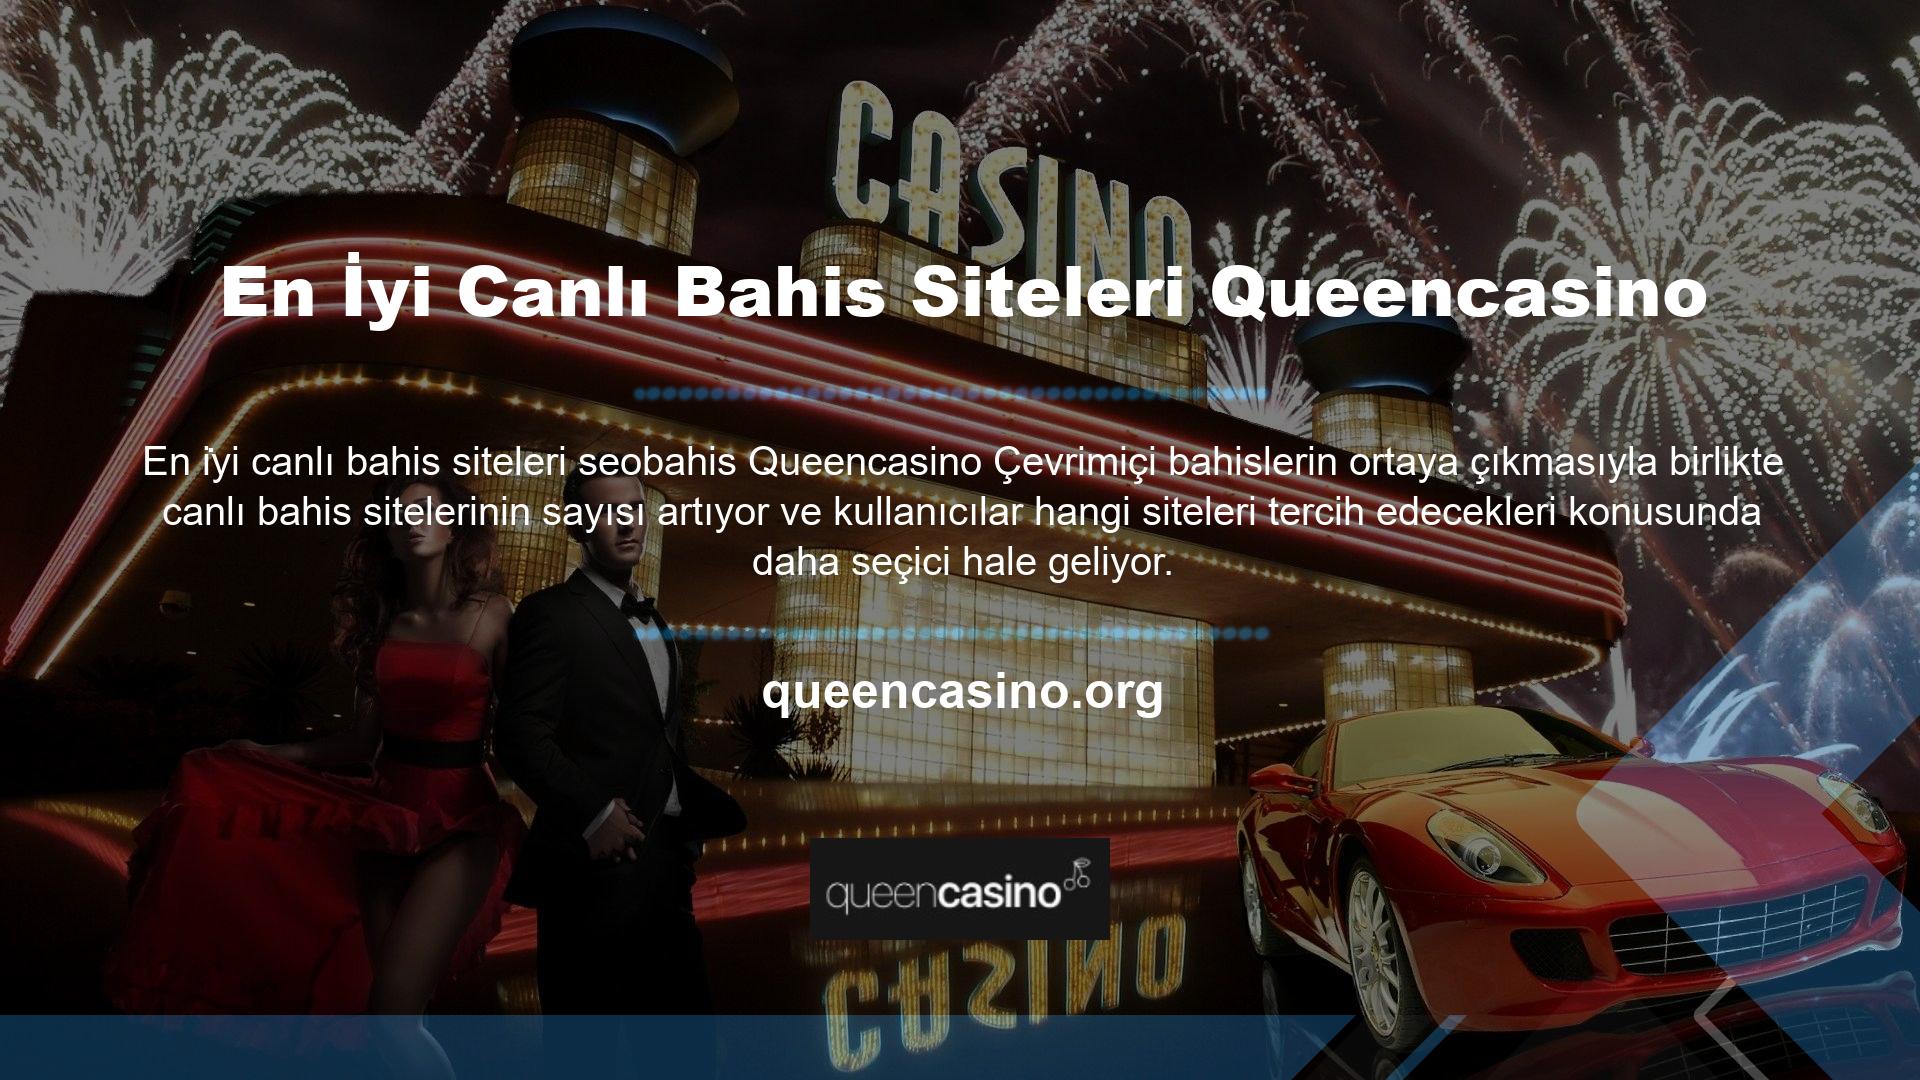 En popüler çevrimiçi bahis sitelerinden biri olan Queencasino, Türkiye'de faaliyet göstermektedir